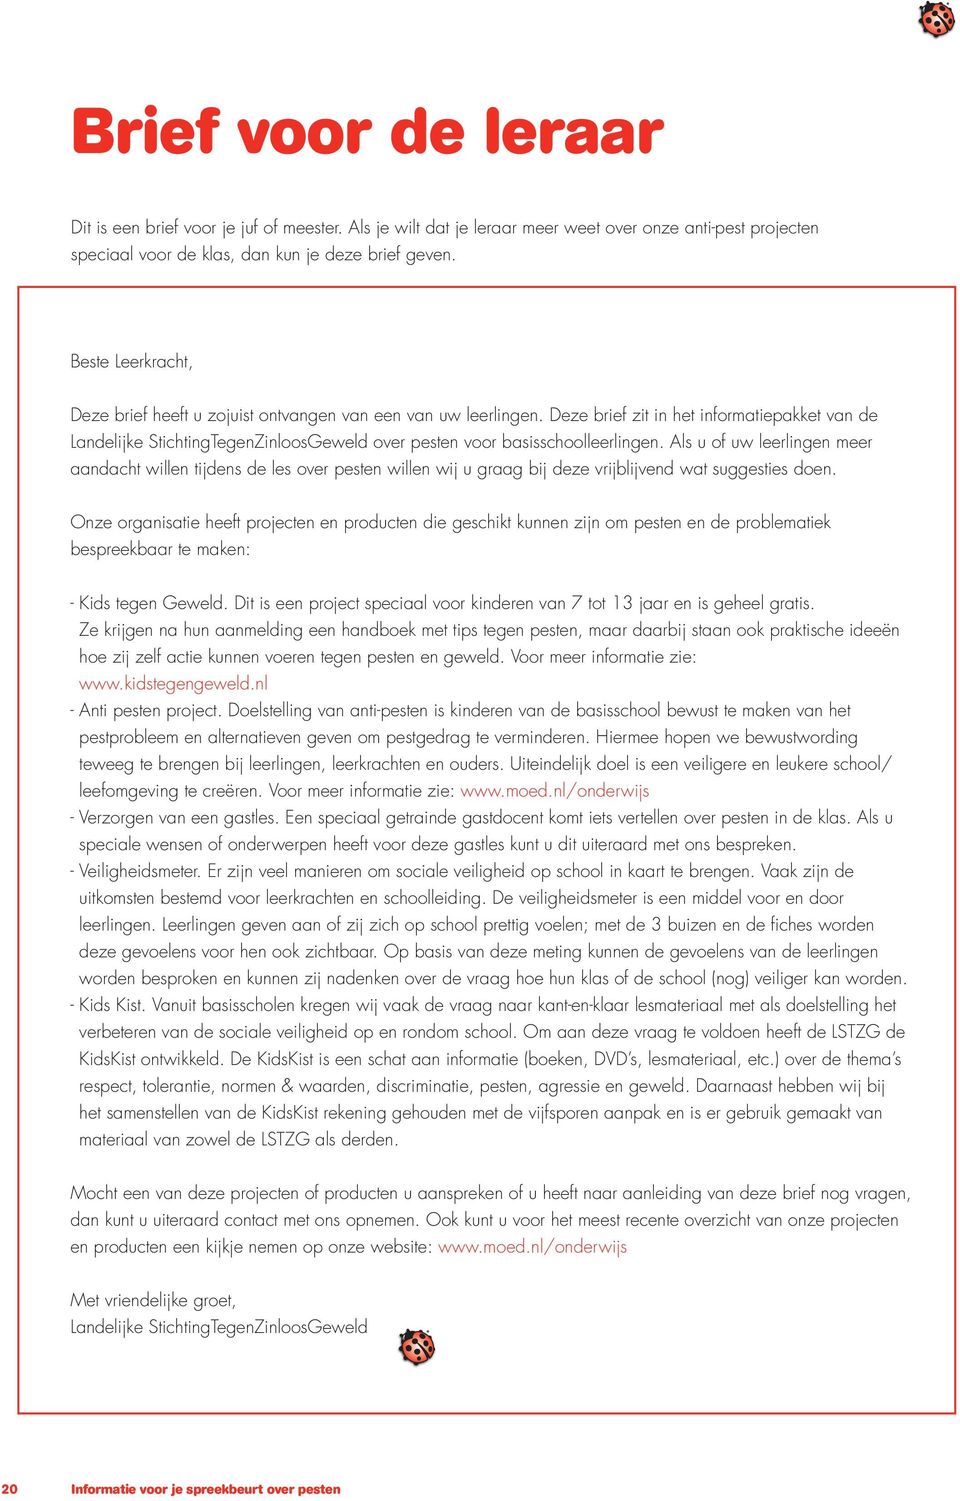 Deze brief zit in het informatiepakket van de Landelijke StichtingTegenZinloosGeweld over pesten voor basisschoolleerlingen.